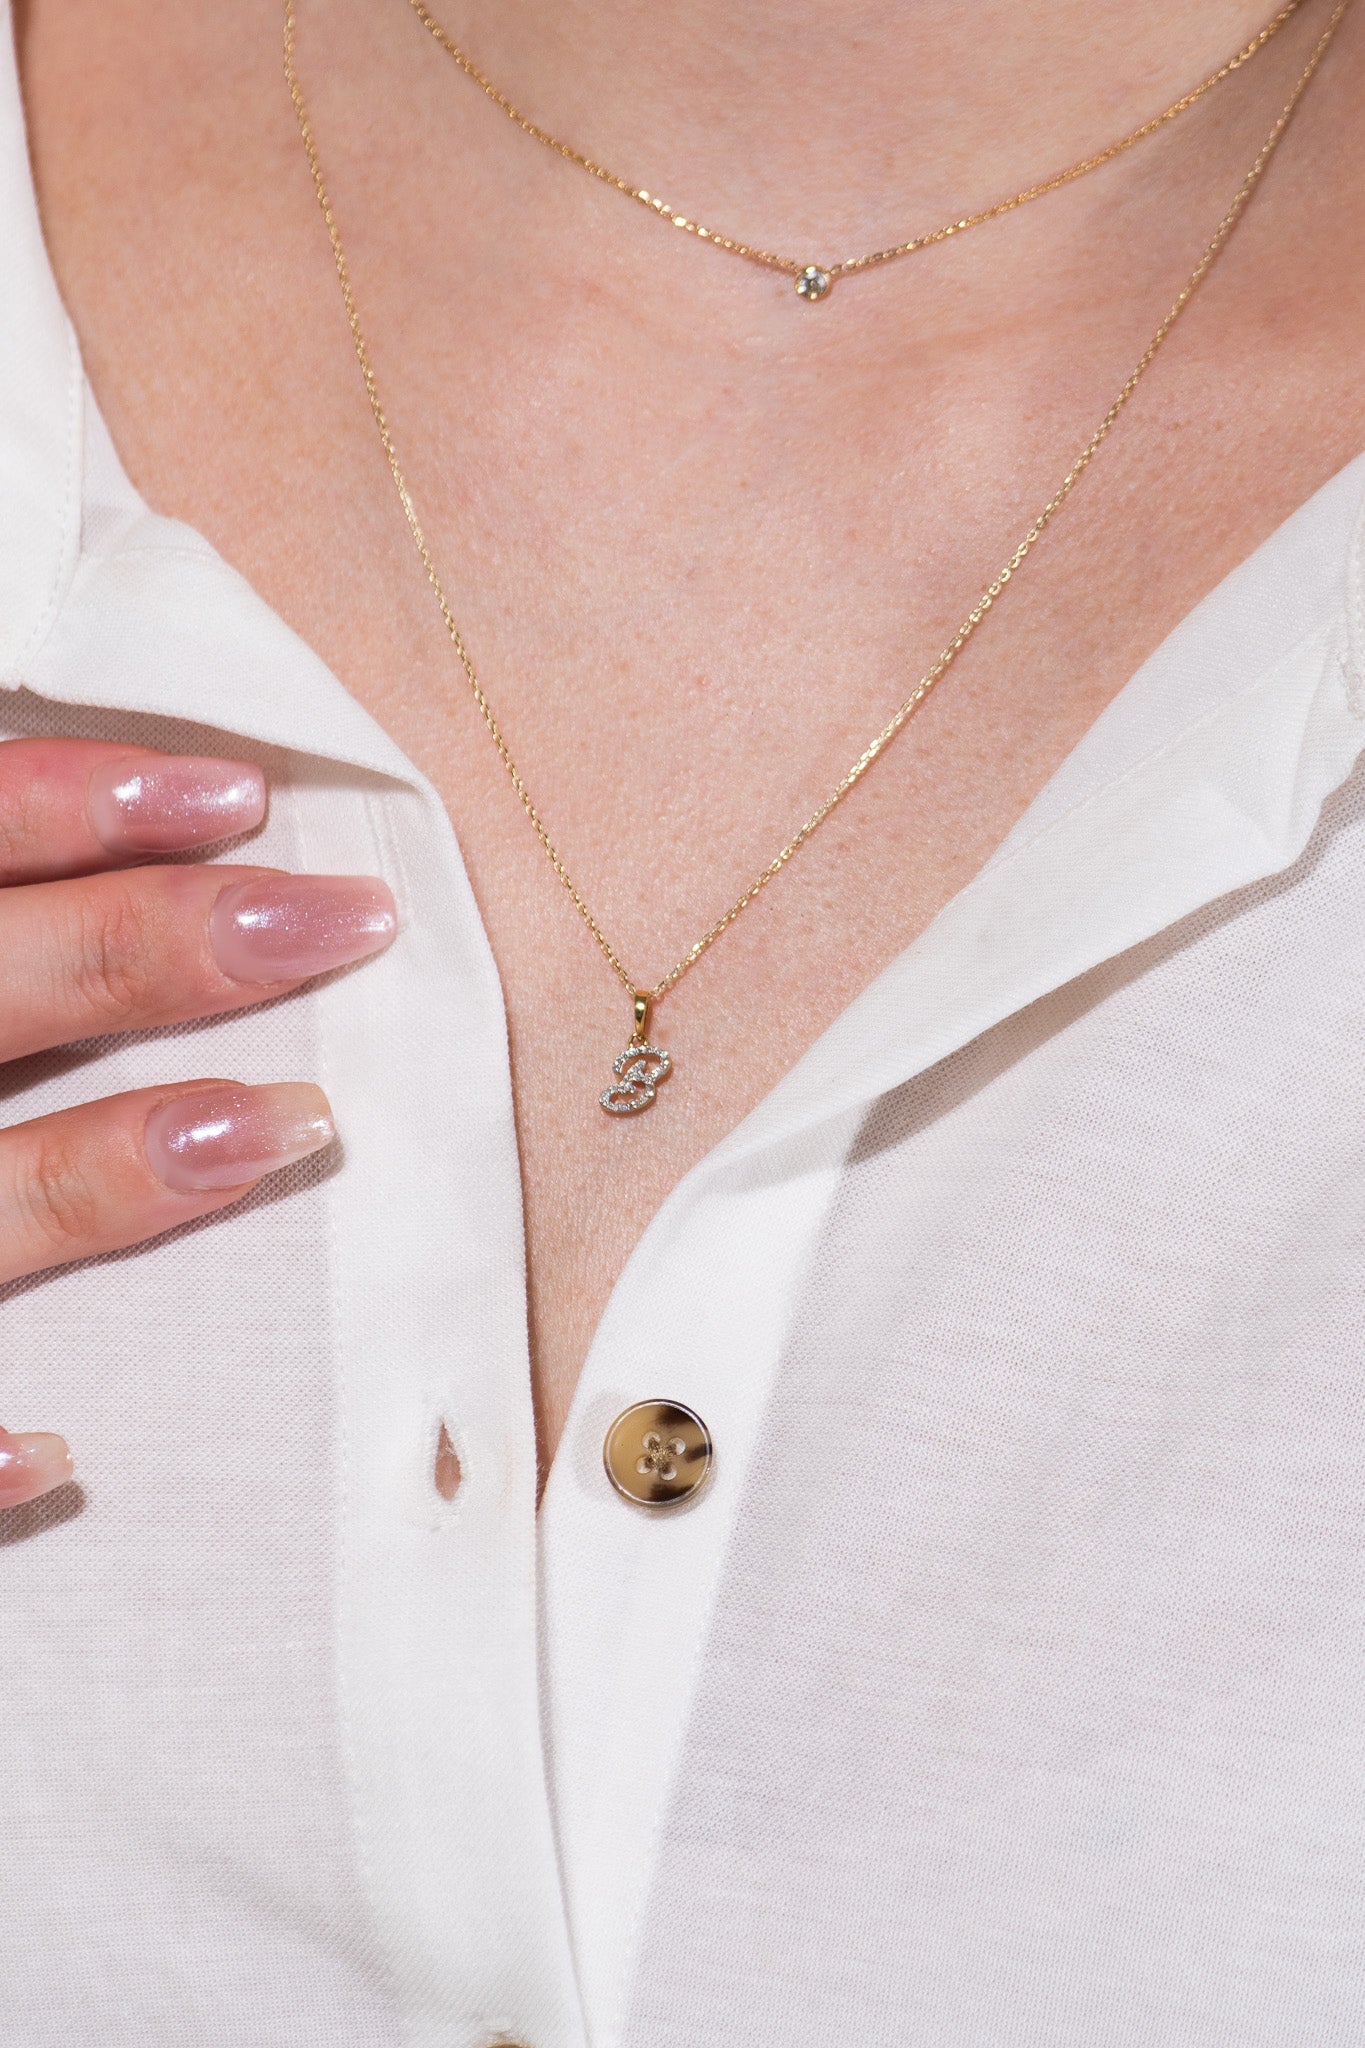 Cursive Diamond Initial Necklace - B Necklaces Estella Collection #product_description# 18557 14k Diamond Gemstone #tag4# #tag5# #tag6# #tag7# #tag8# #tag9# #tag10# 14k Yellow Gold